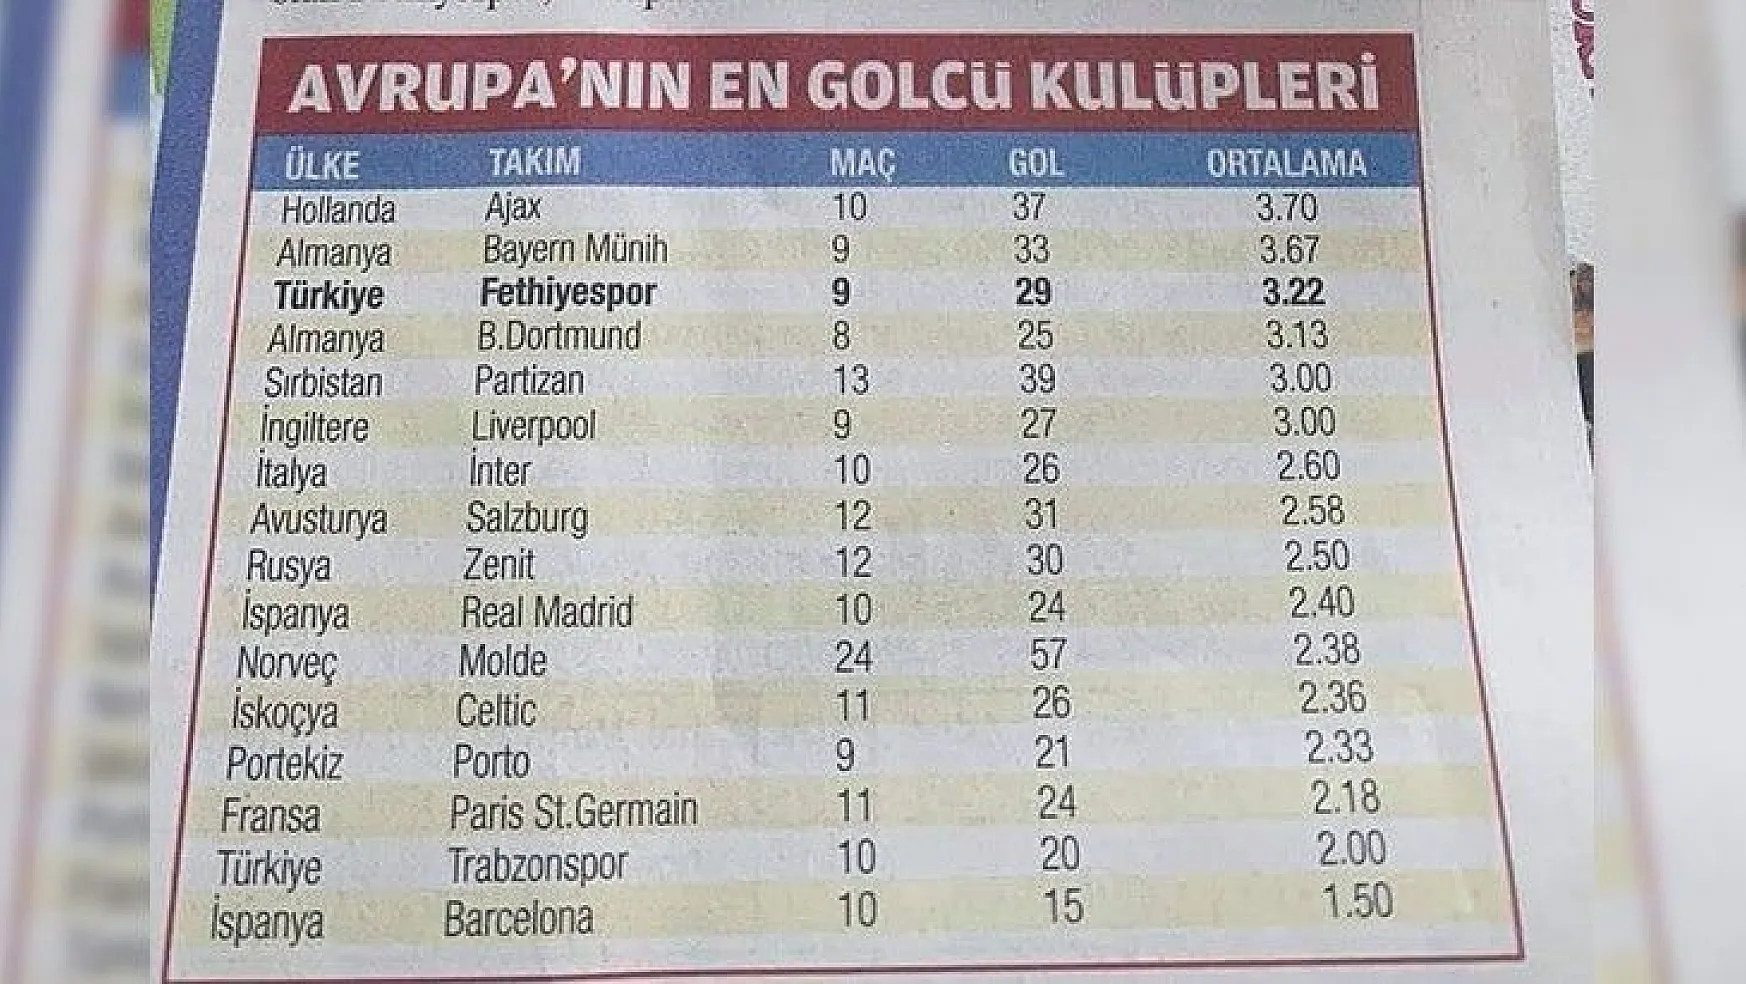 Fethiyespor 29 gol ile en golcü kulüpler arasında